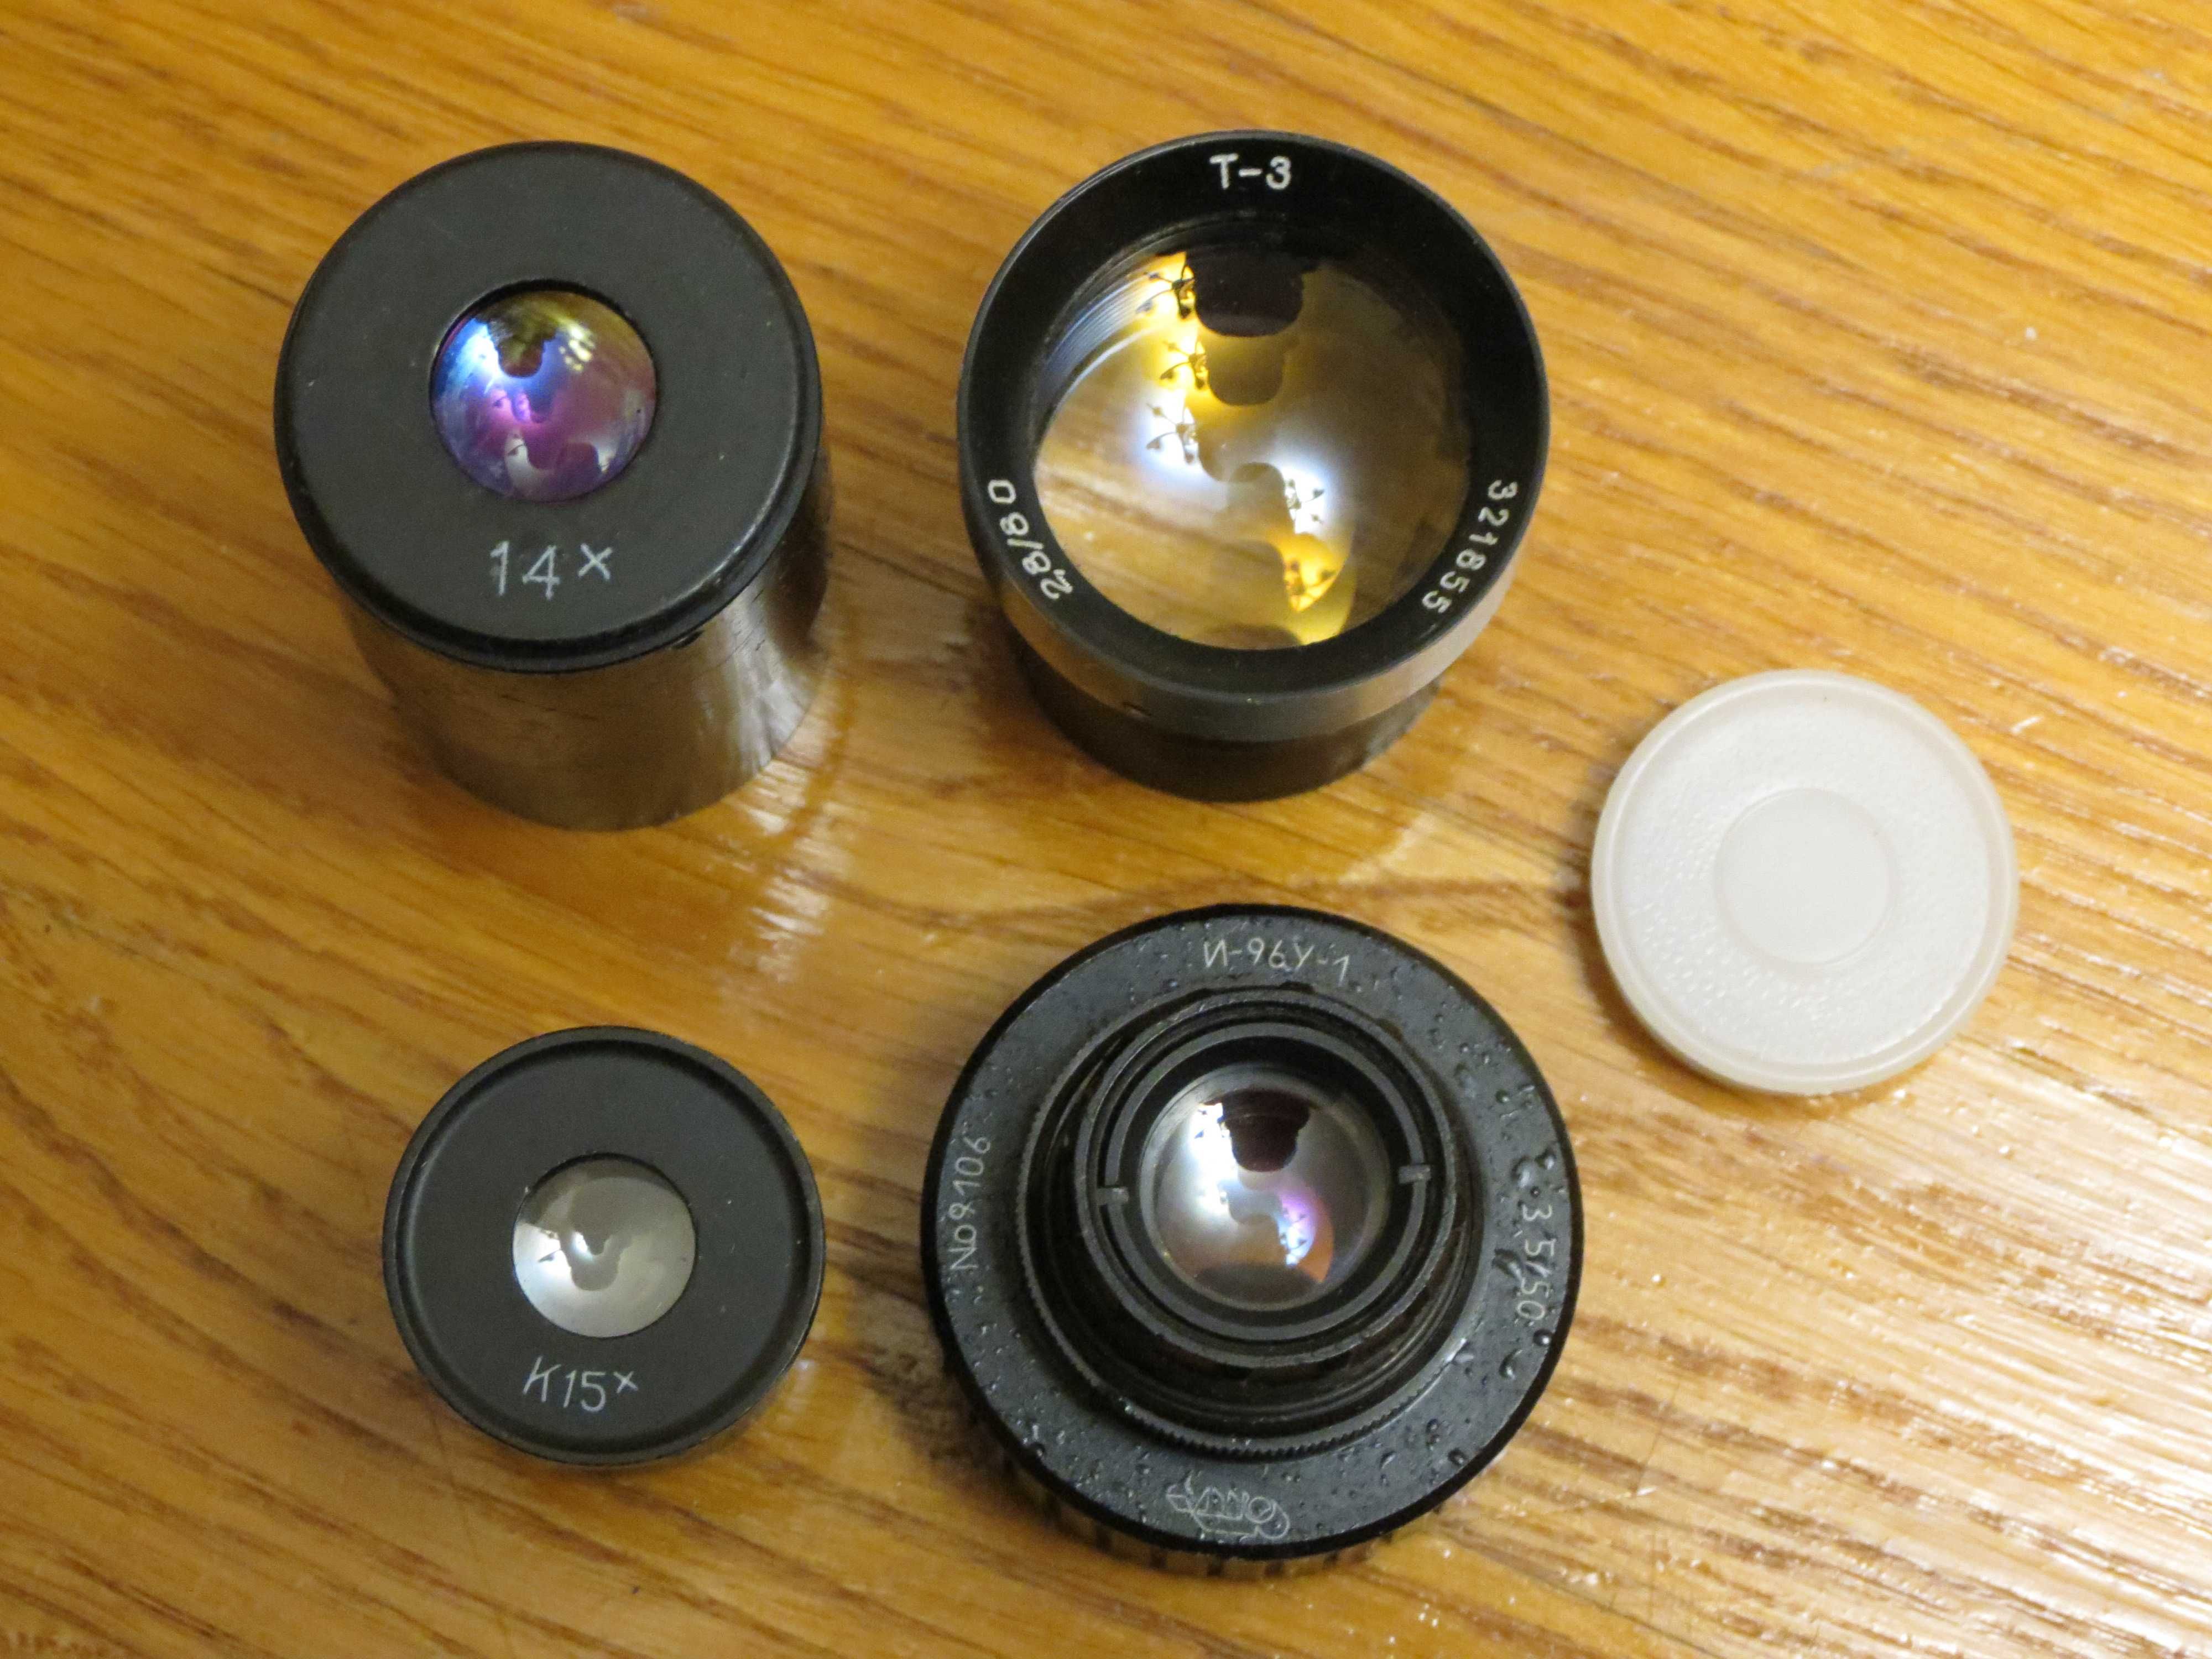 Окуляры и объективы микроскопа И-96У-1, Т3, 15х